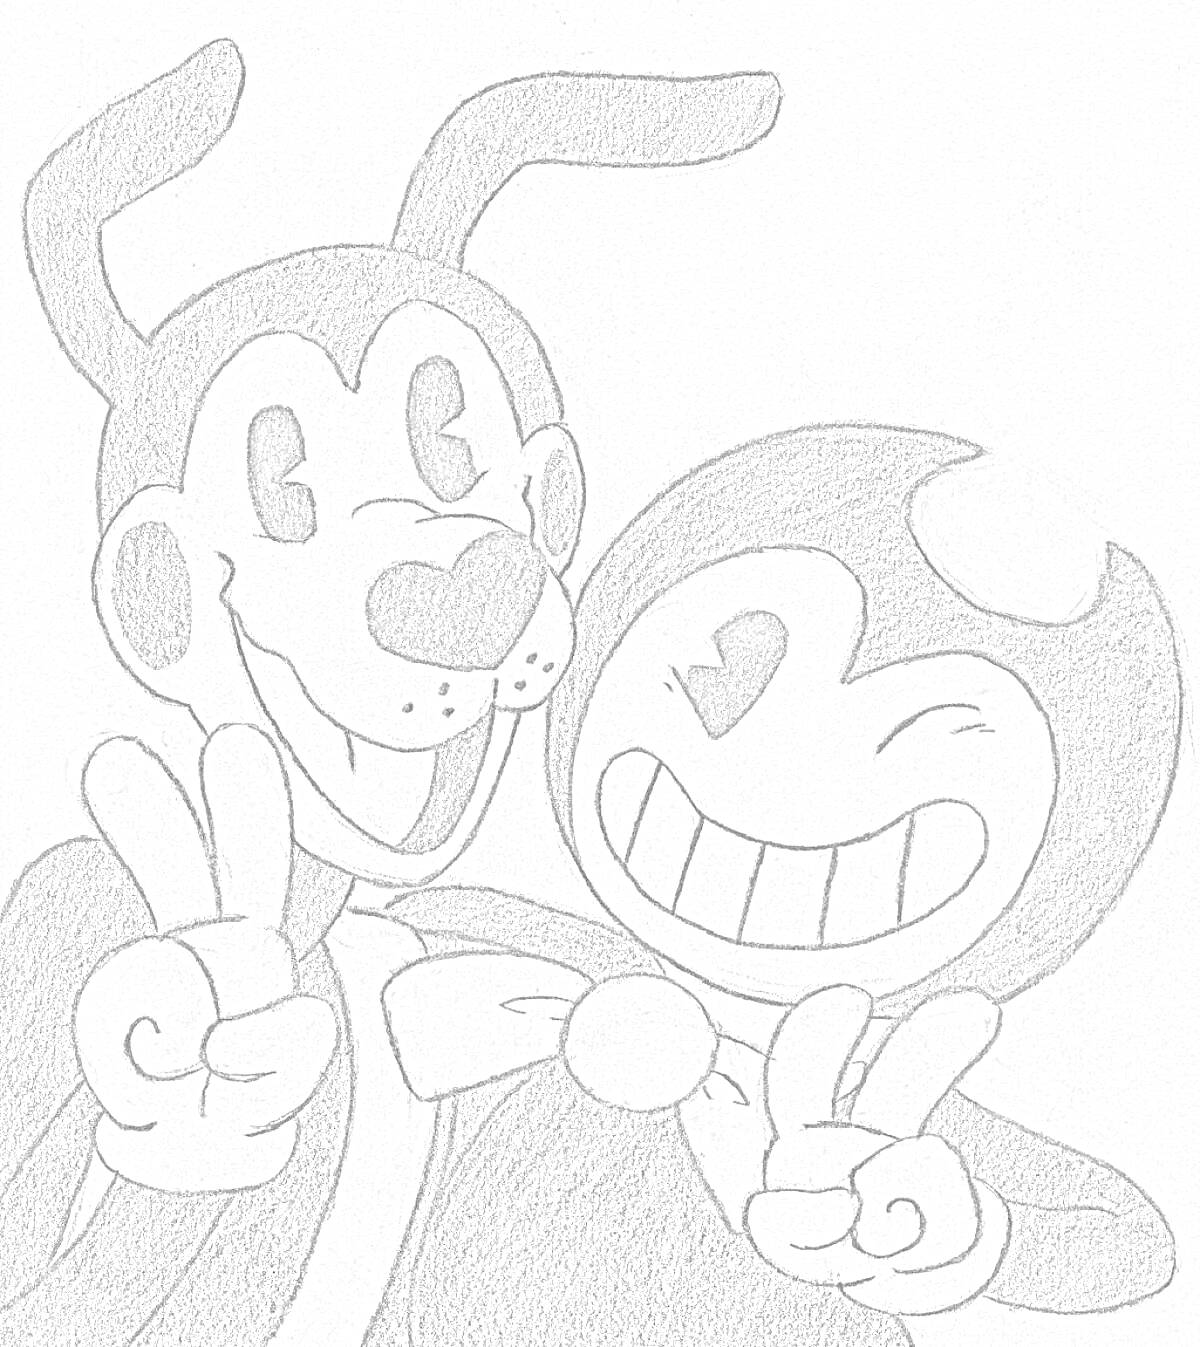 два улыбающихся мультяшных персонажа, делают знак мира